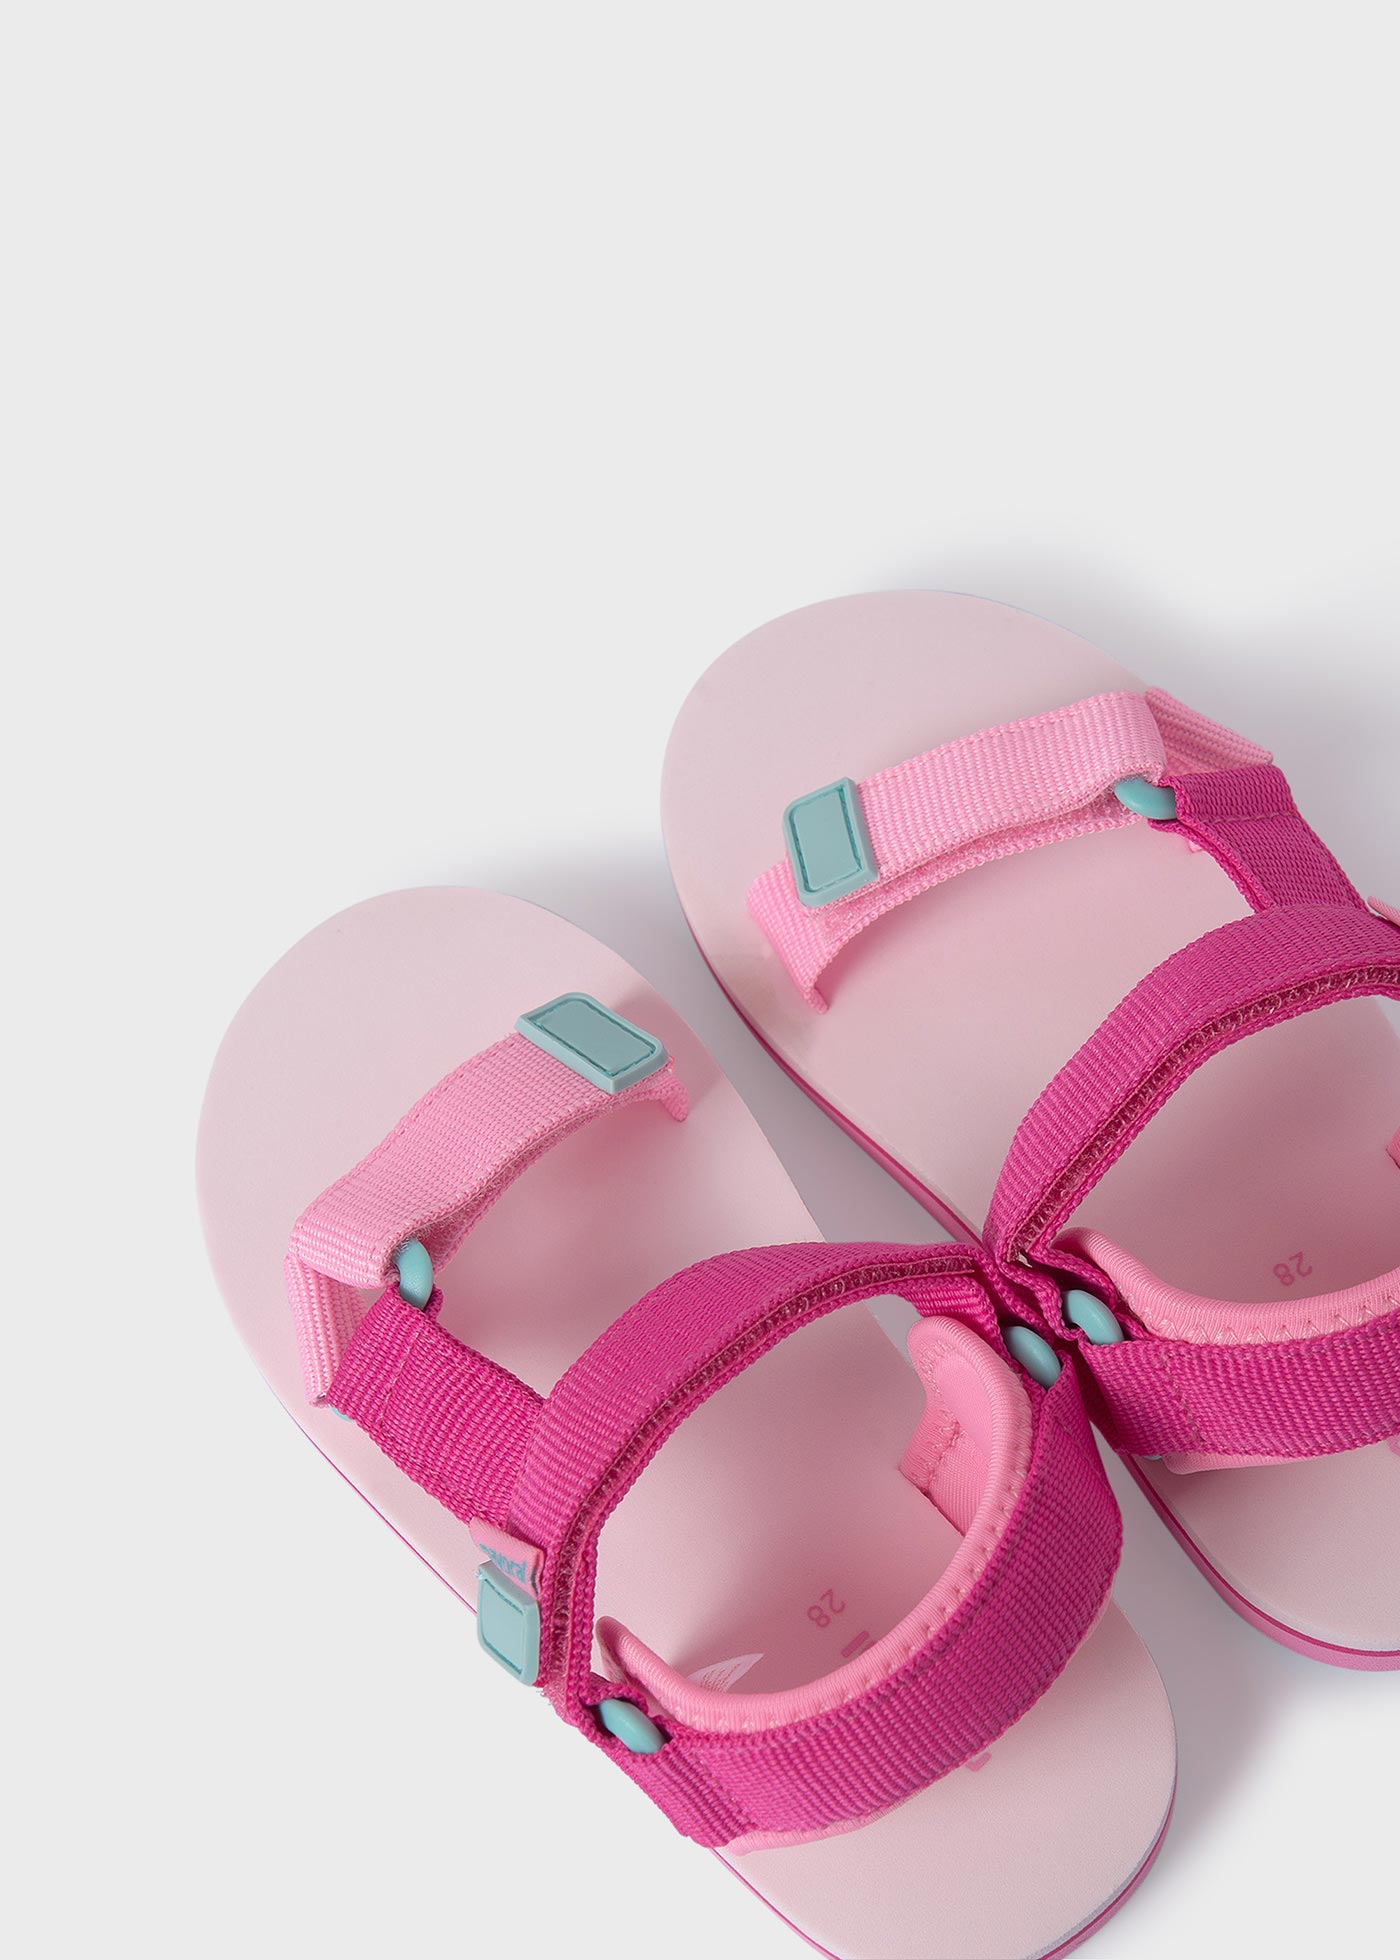 Baby Strap Sandals